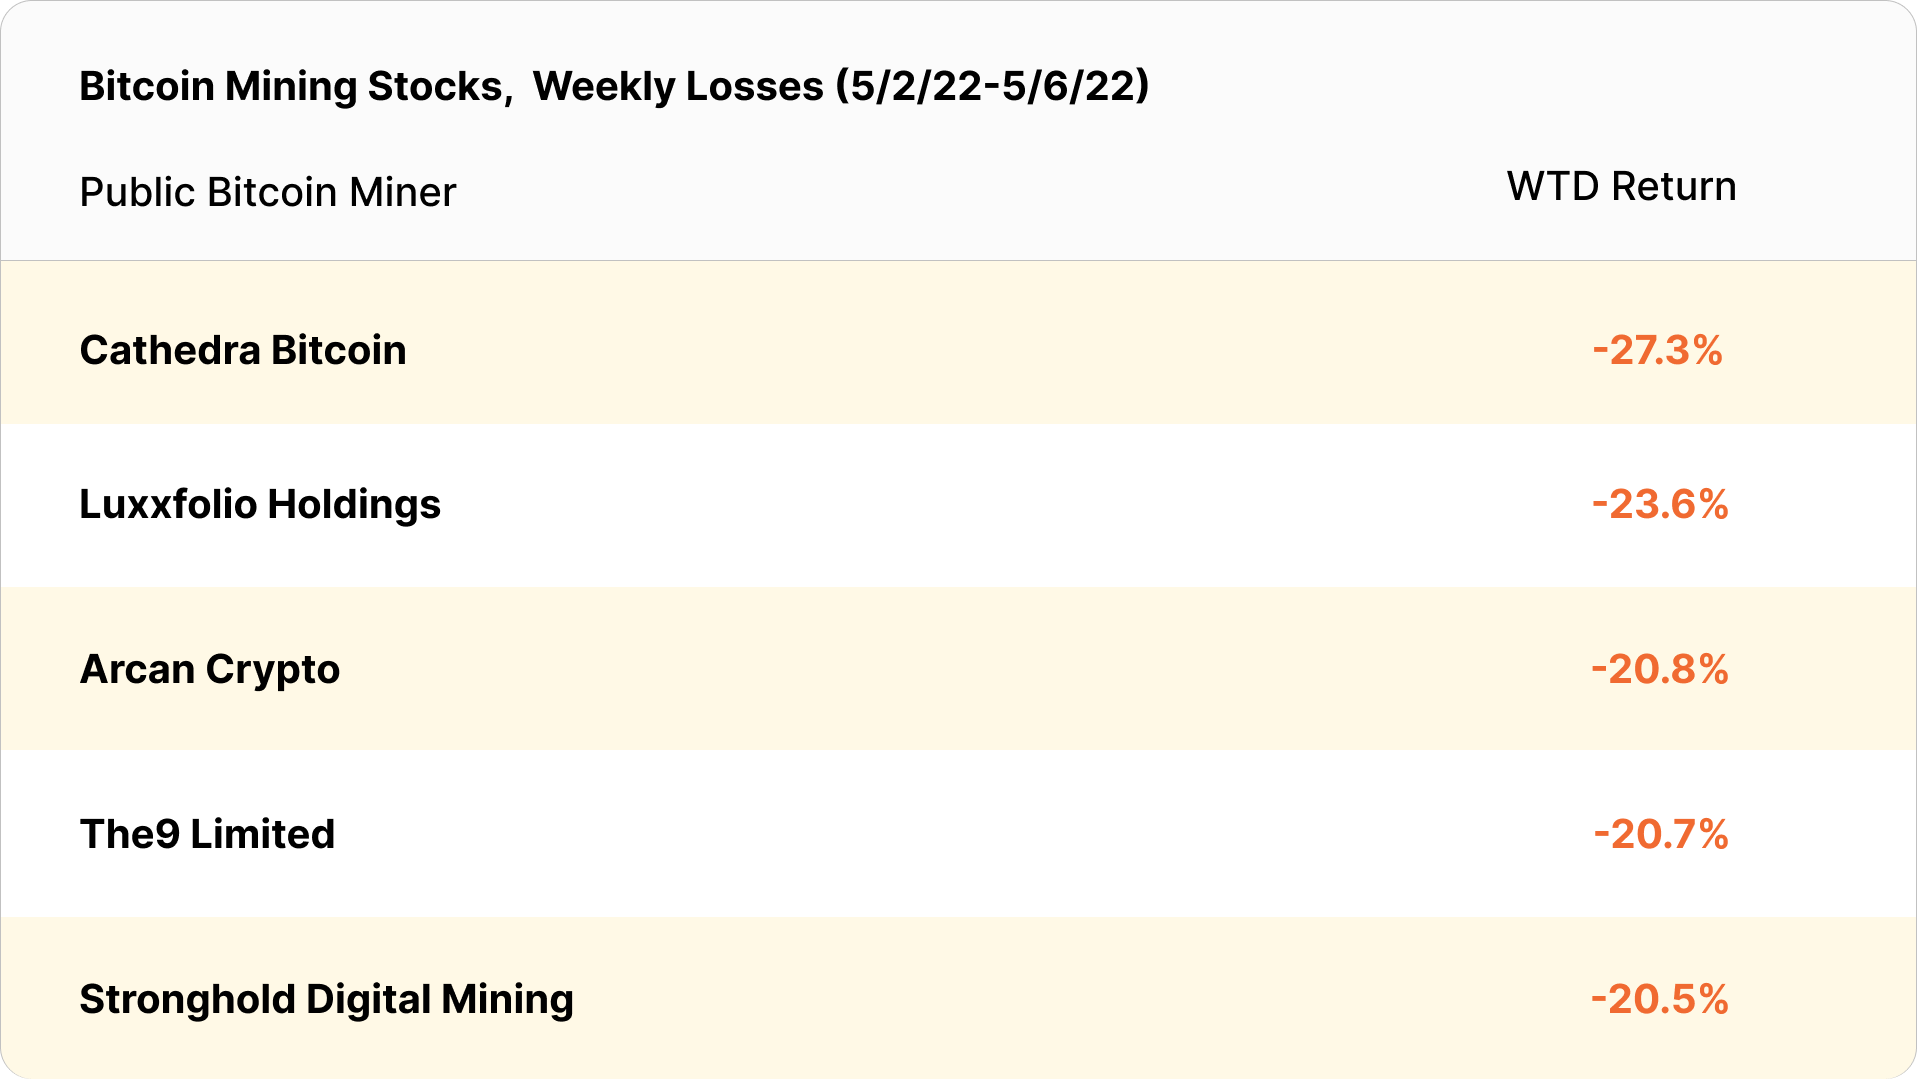 bitcoin mining stocks weekly losses (May 2 - May 6, 2022)